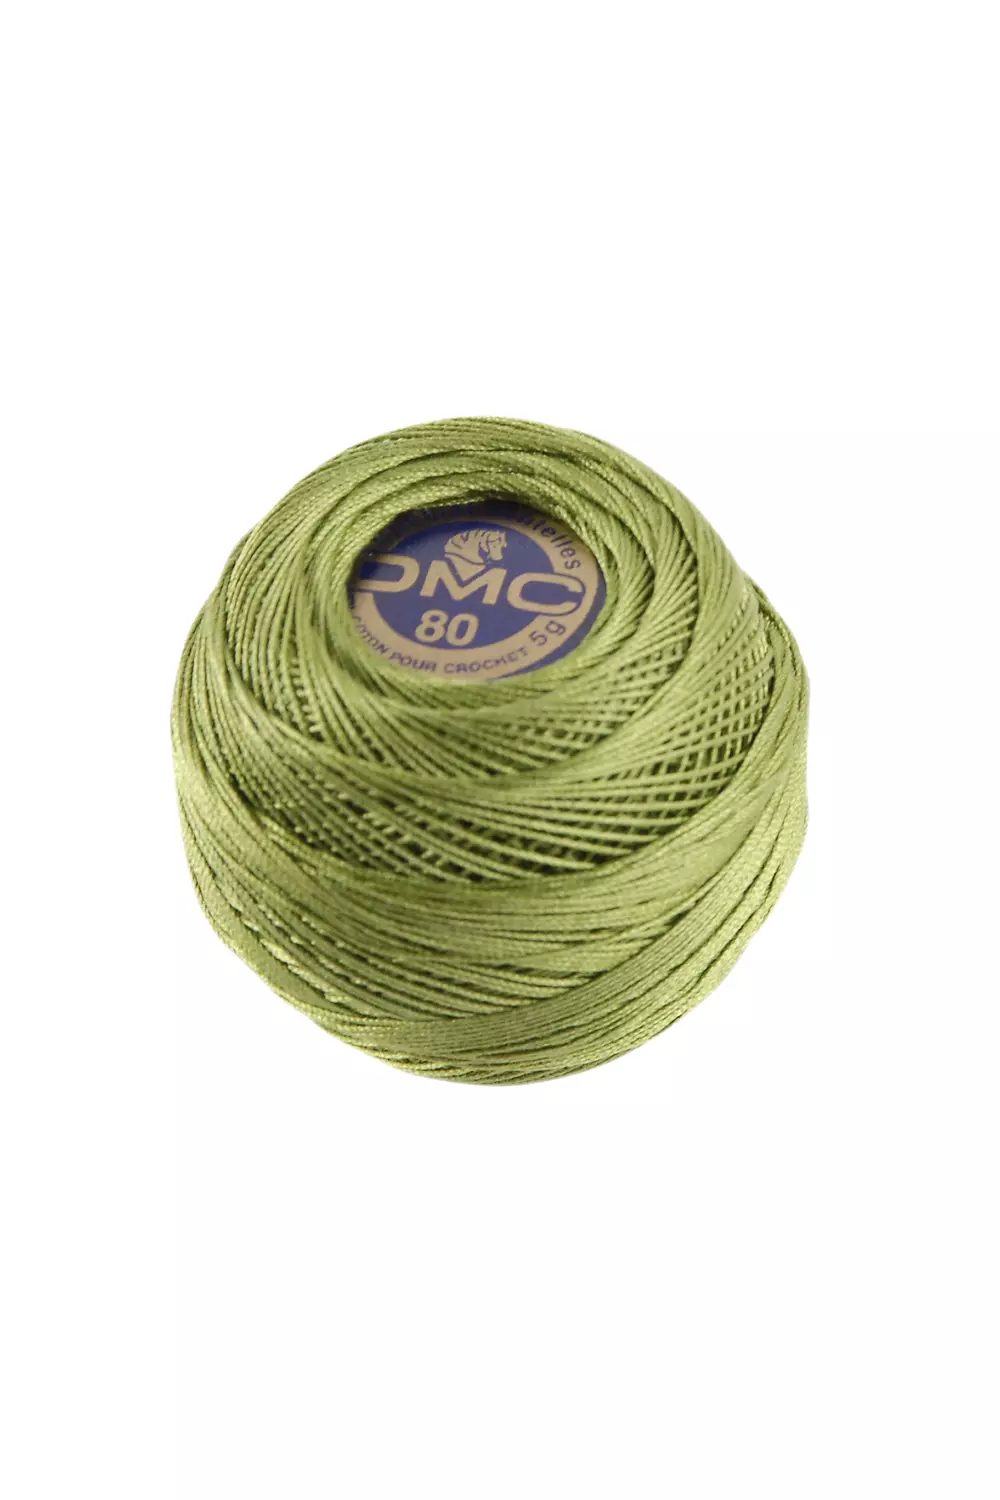 6 fils de coton spécial crochet 55 m - rose-orange-camel-vert